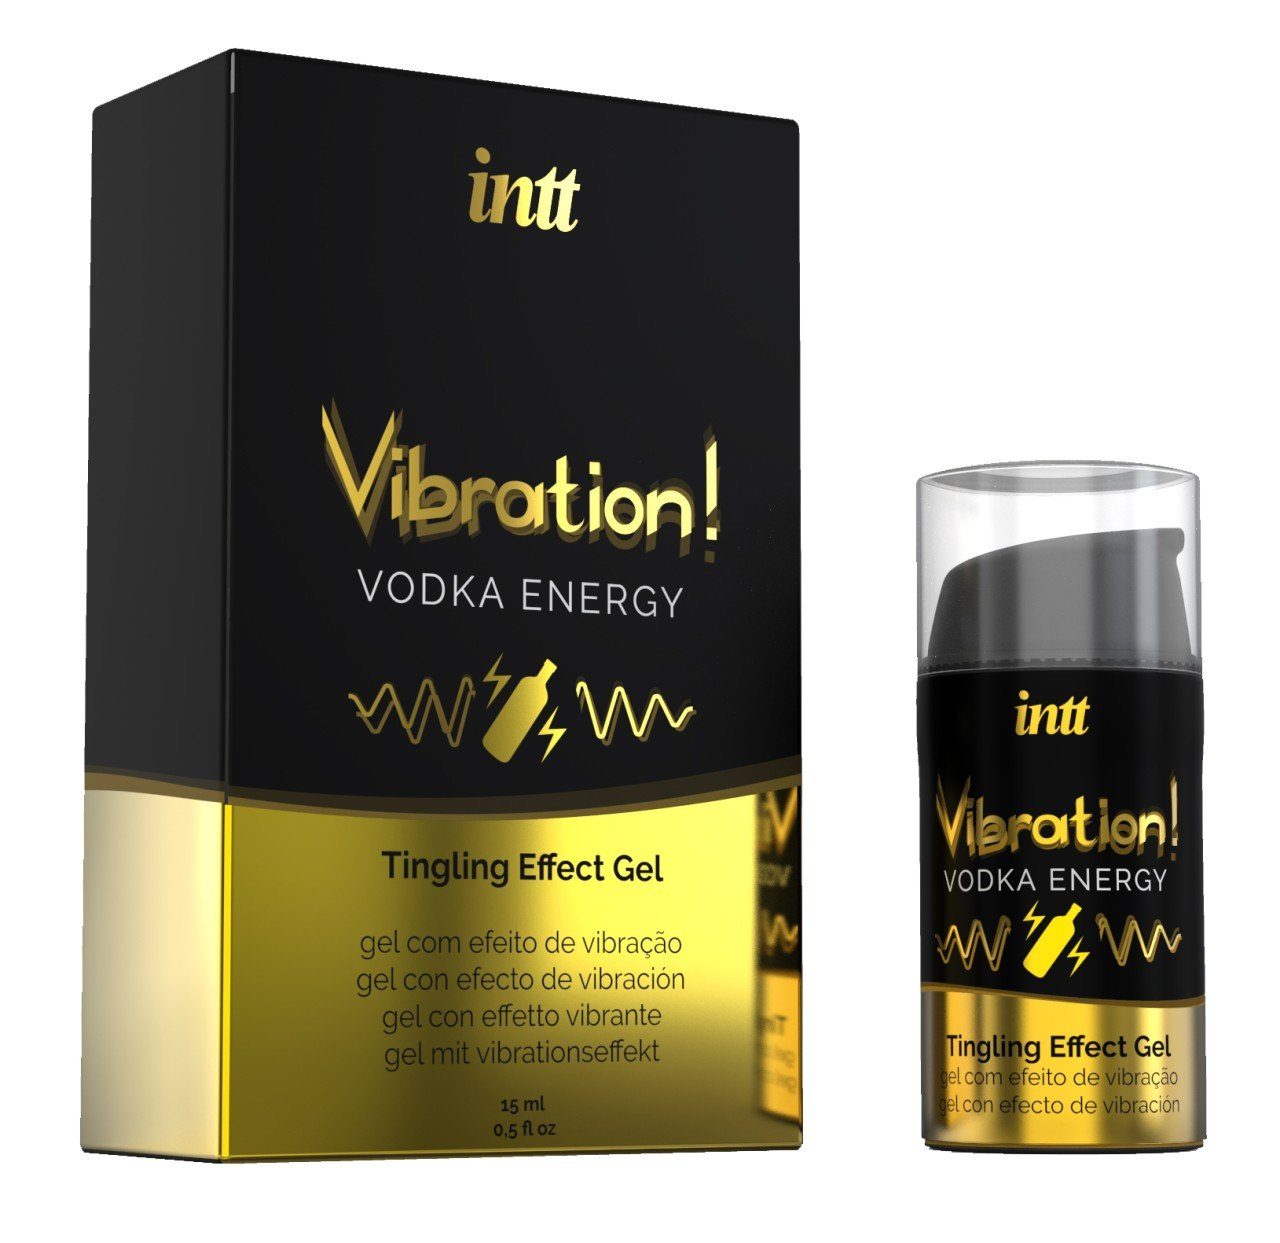 Vodka 15ml INTT Liquid 15 intt ml Vibration Gleitgel -